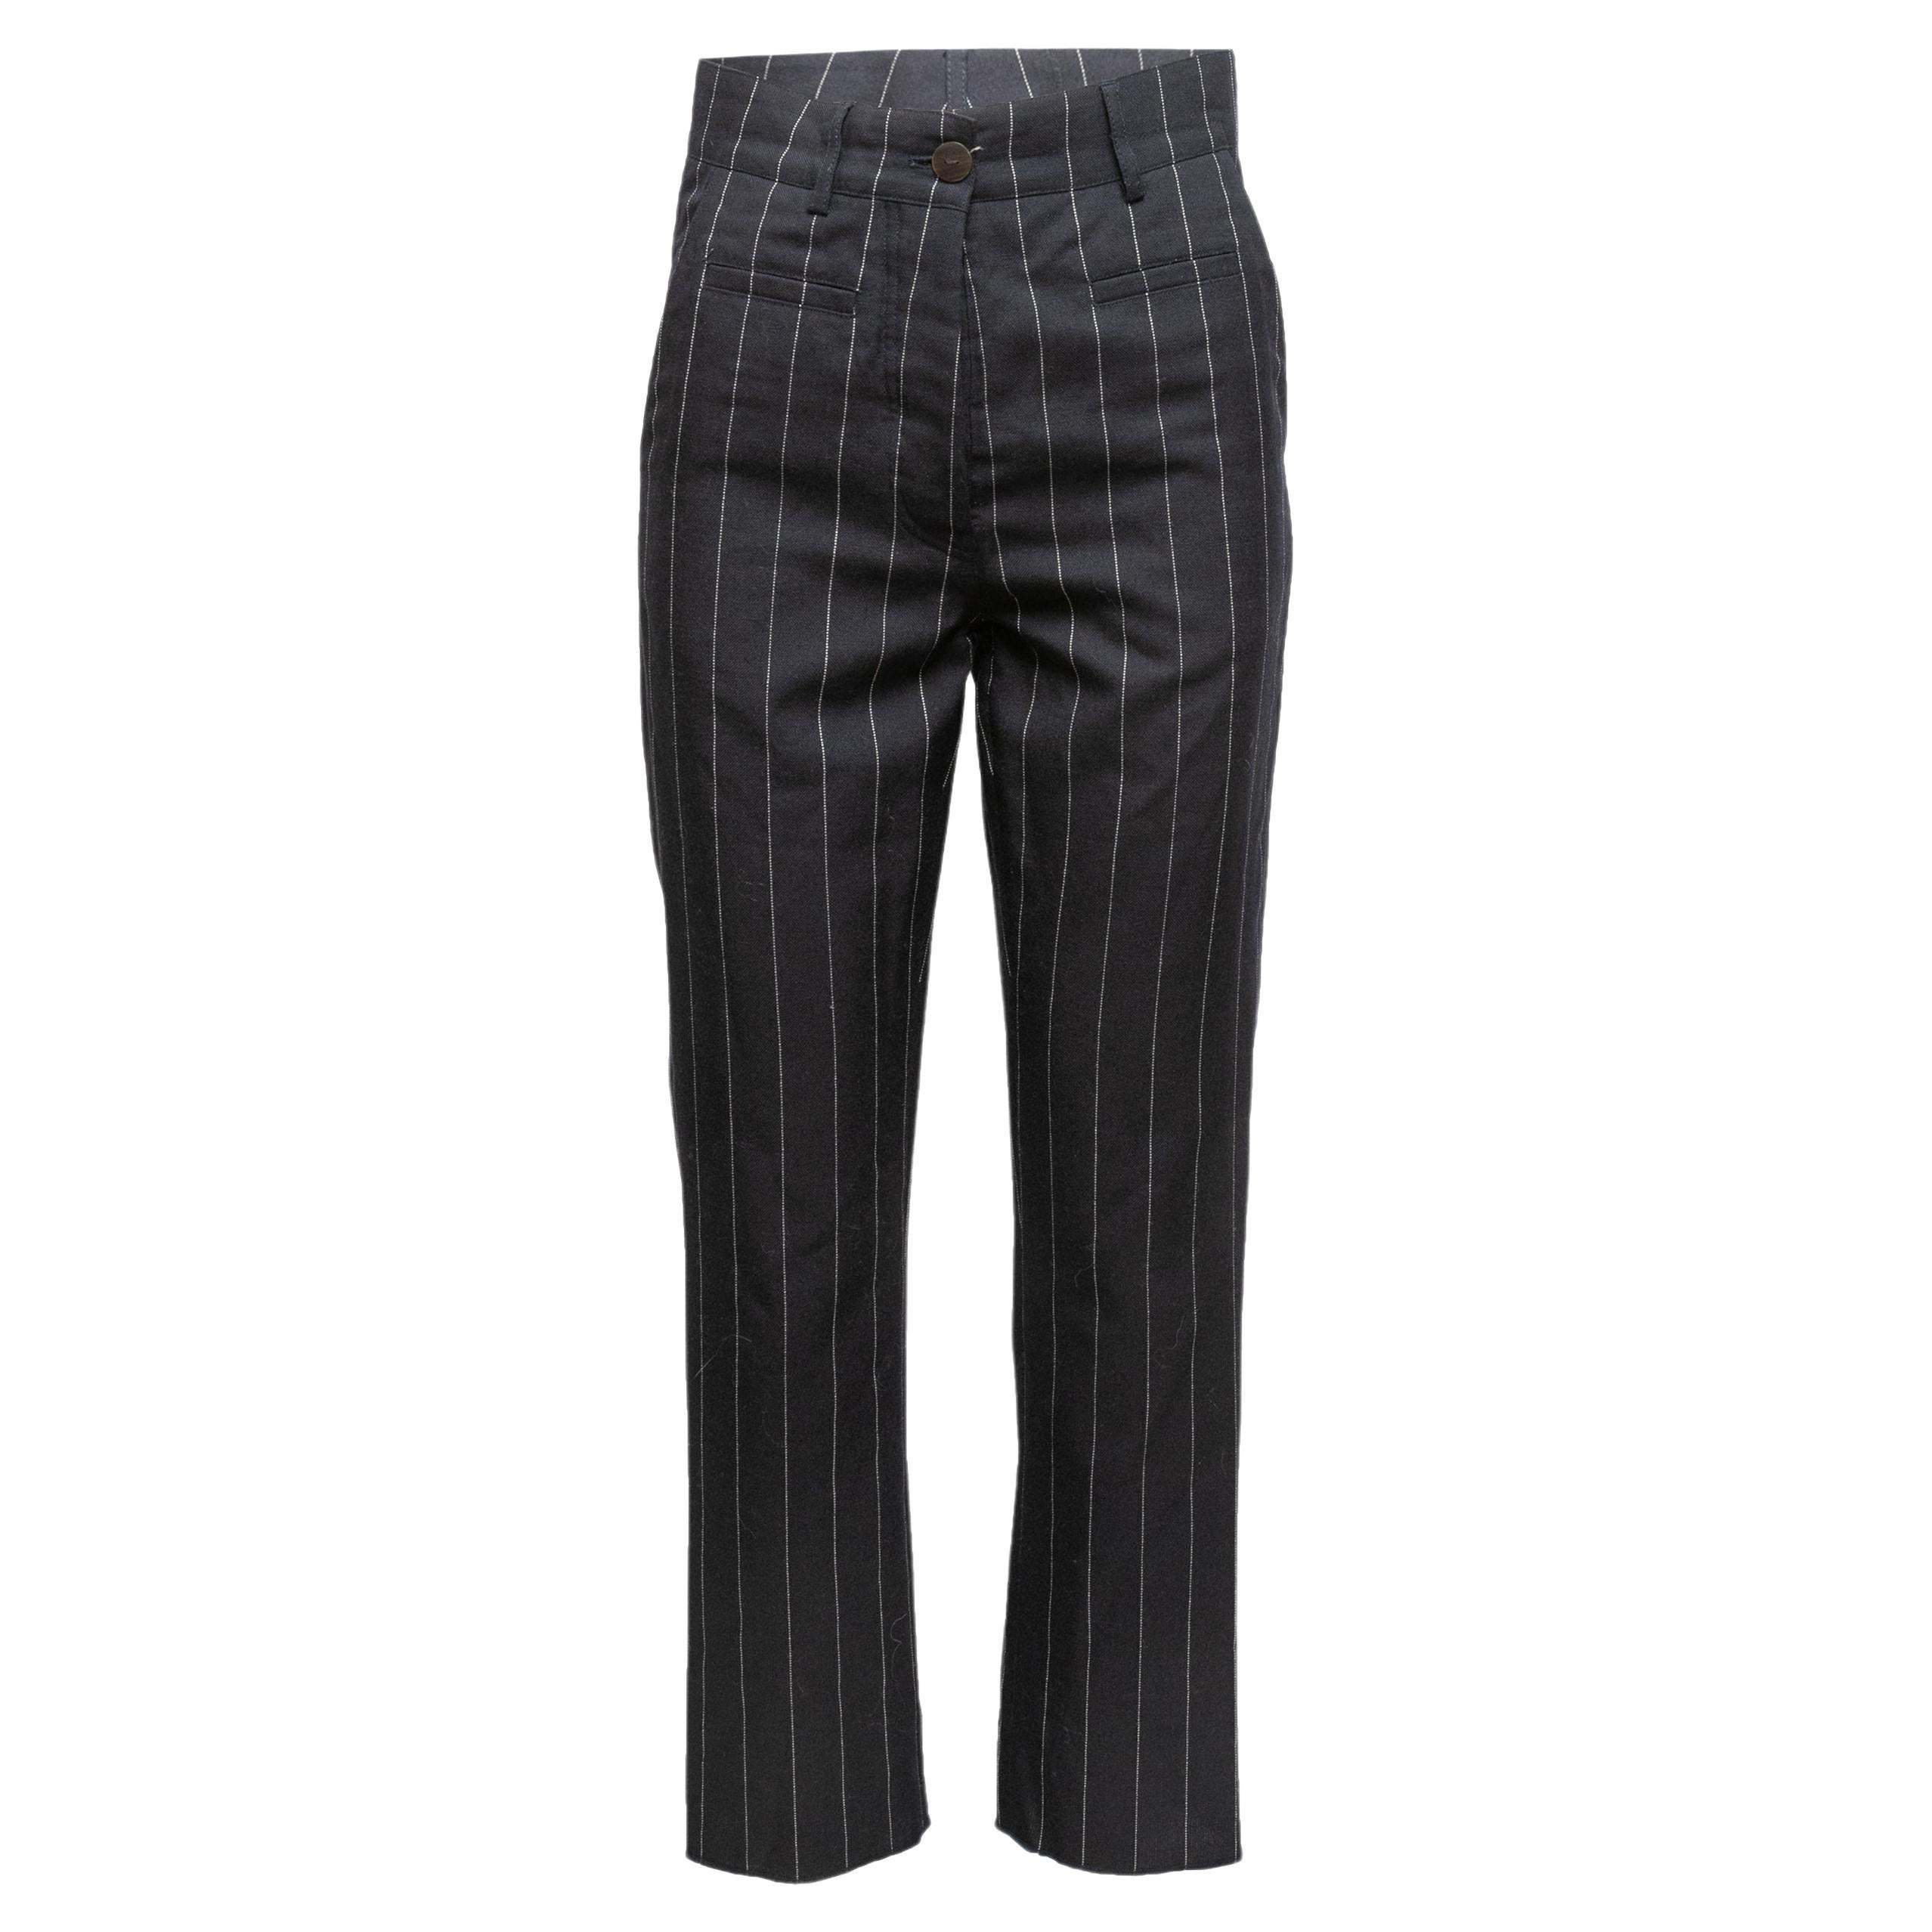 Navy & White Loewe Wool Pinstriped Pants Size EU 34